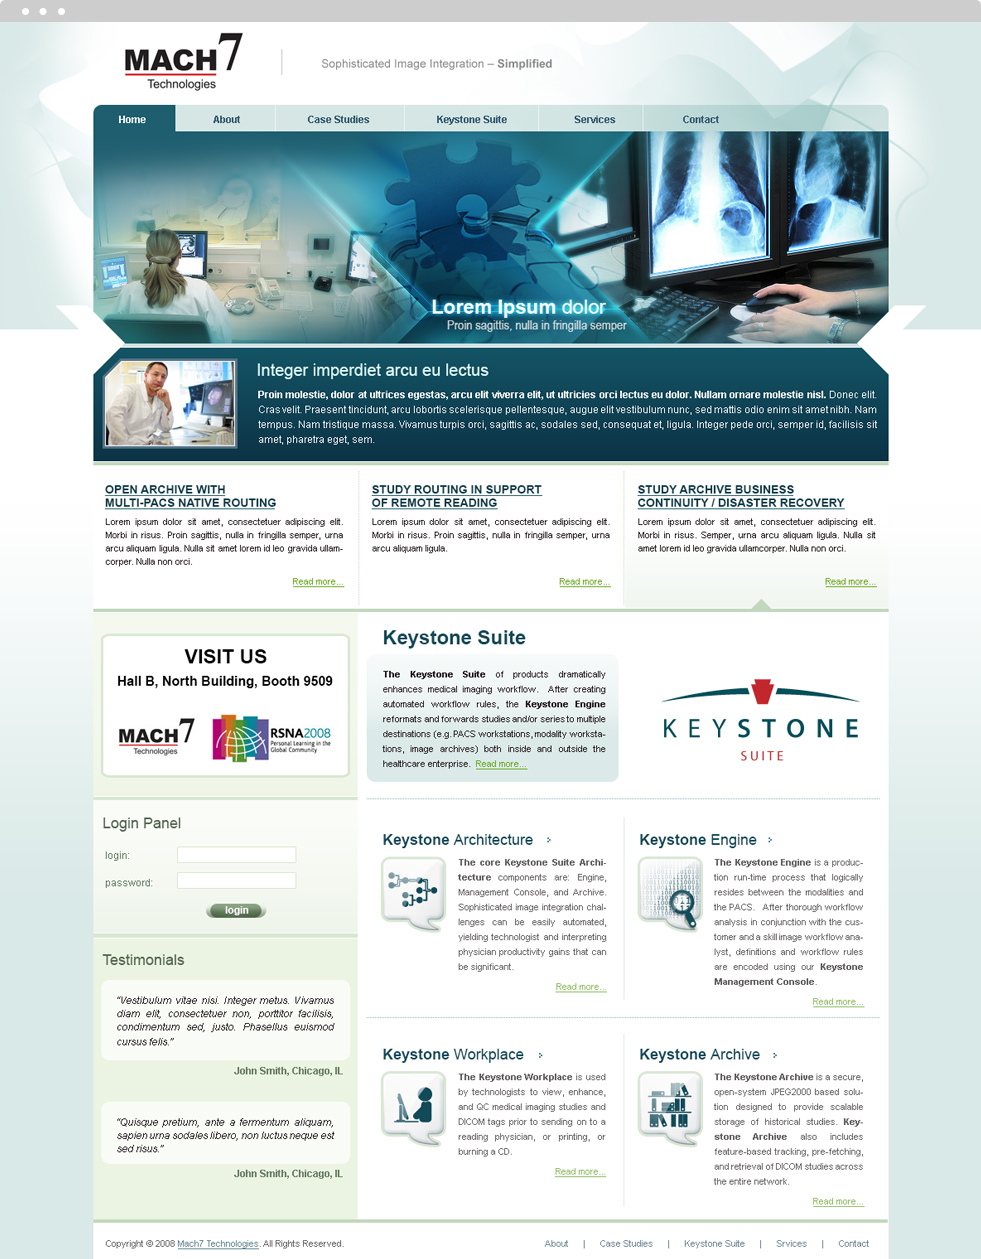  Website Design - Mach7 Technologies - Homepage